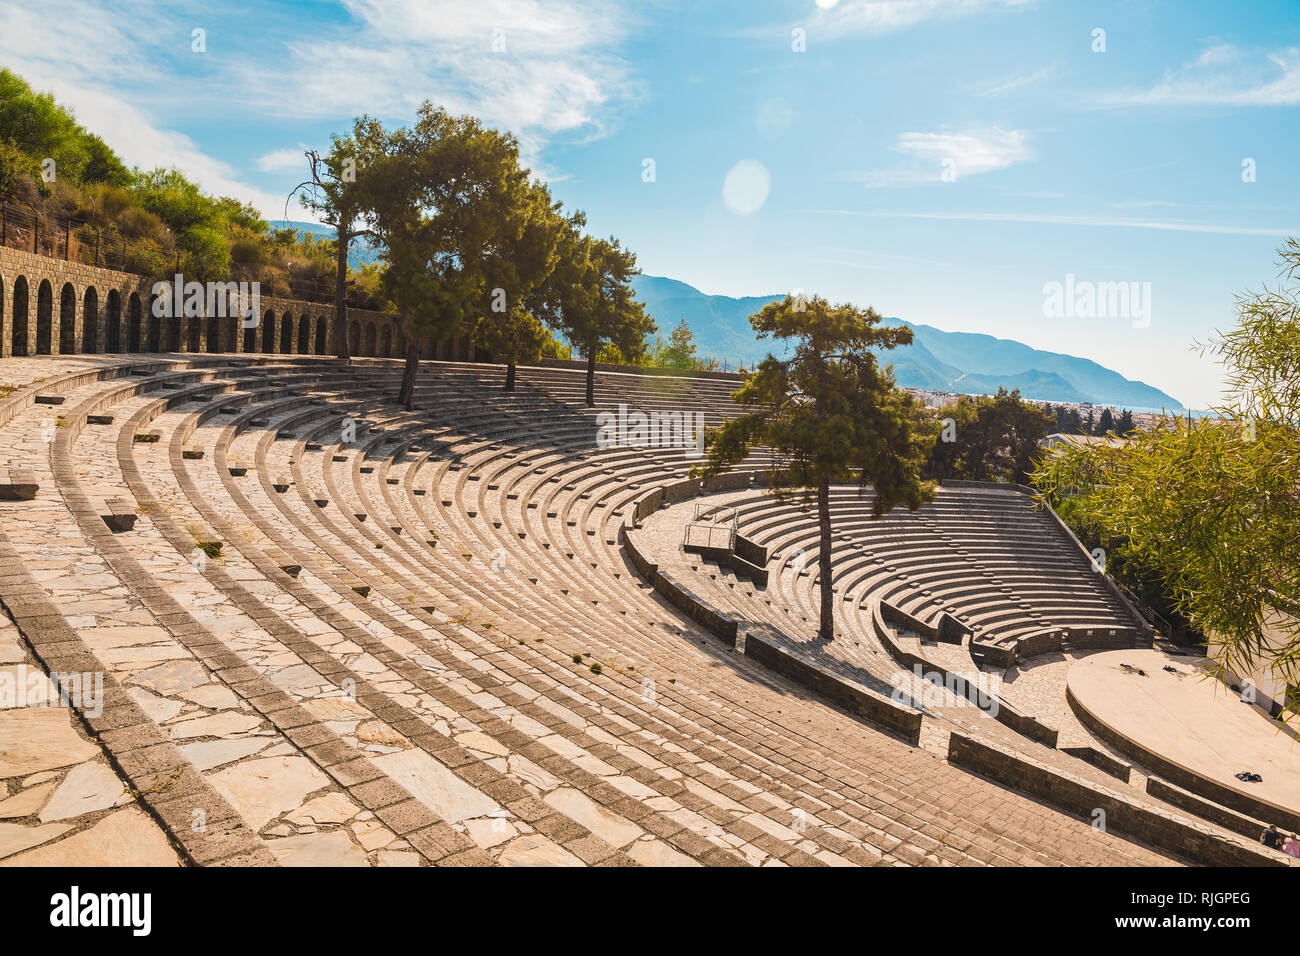 Vue panoramique de l'ancien amphithéâtre à Marmaris Ville. Reconstruit en pierre en plein air théâtre. Marmaris est une destination touristique populaire en Turquie Banque D'Images